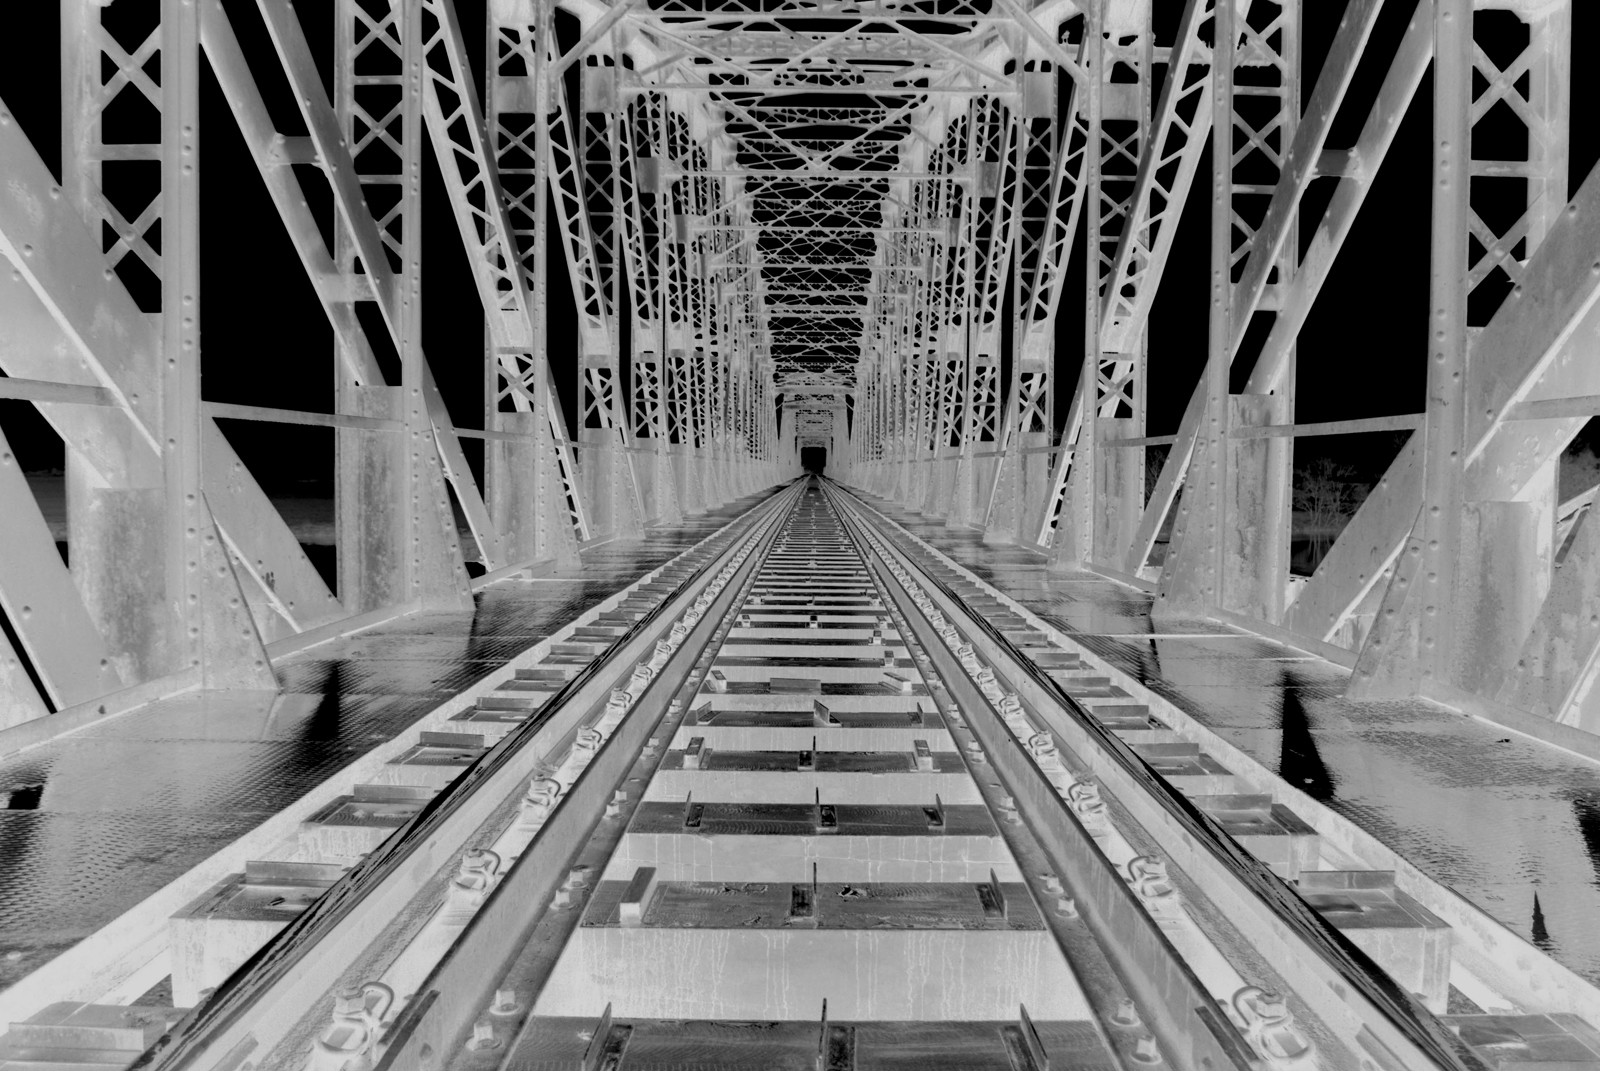 Železniční most